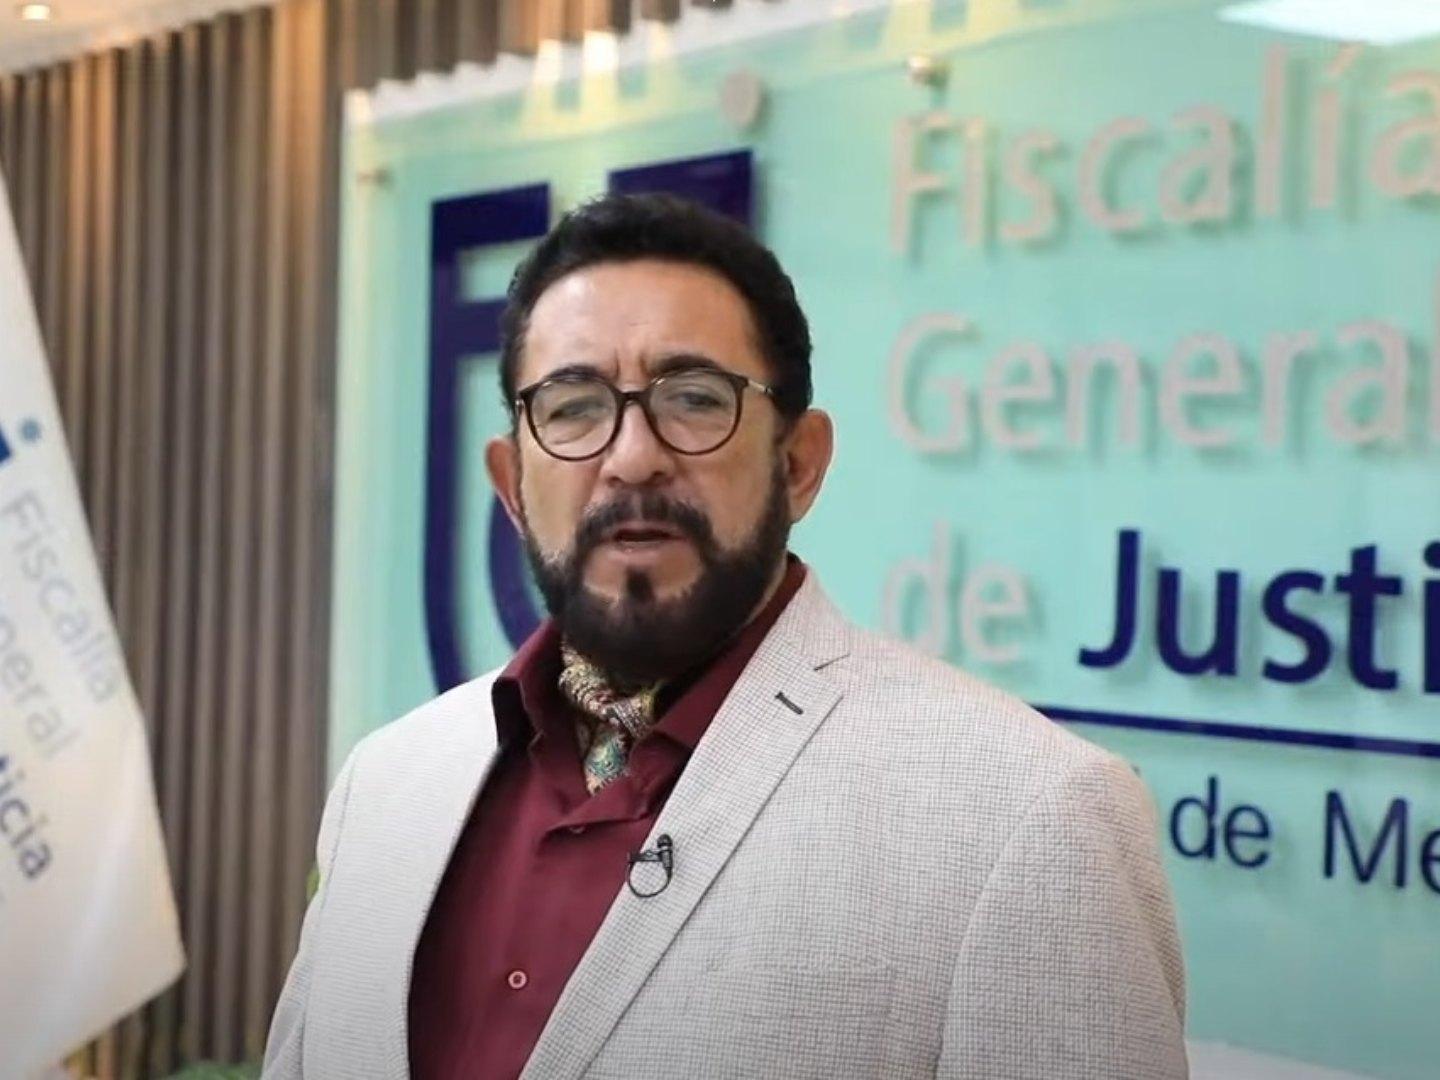 Candidato de Morena "Posiblemente No Participó en Asesinato" en Portales: Fiscalía CDMX